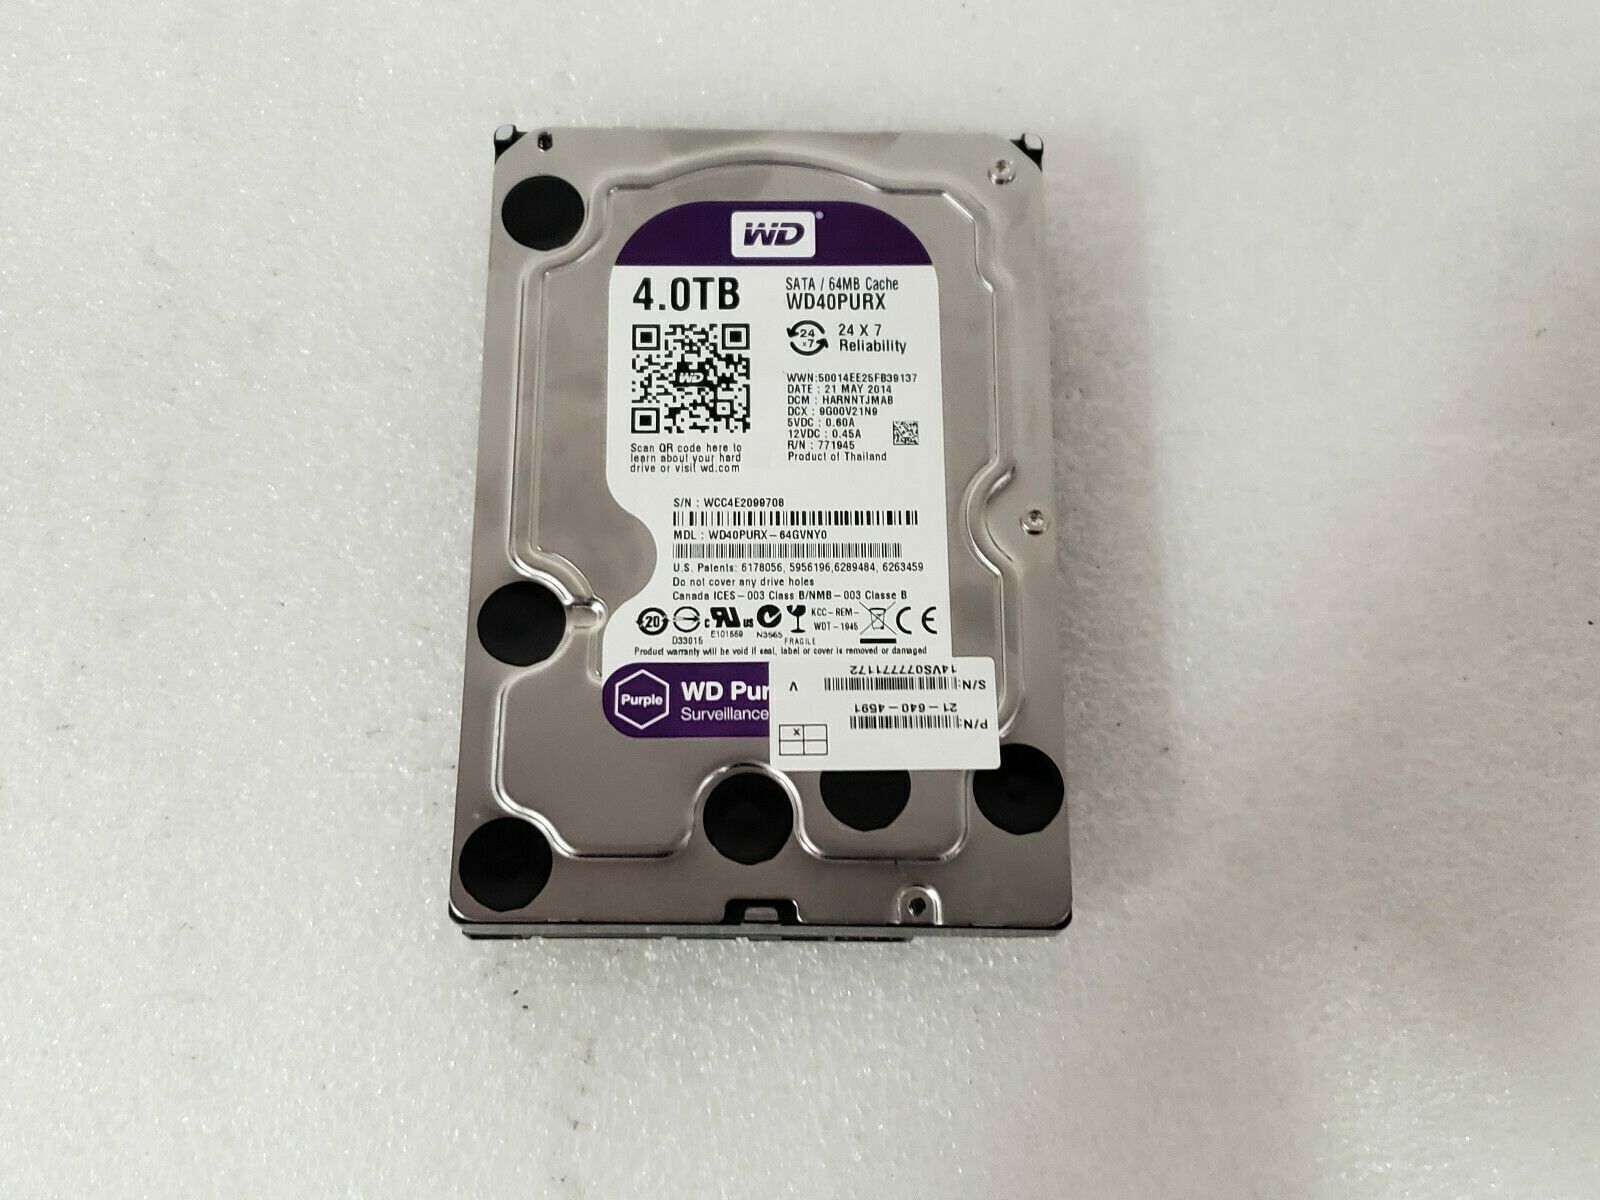 Western Digital WD Purple 4TB HDD SATA lll Surveillance Hard Disk Drive WD40PURX